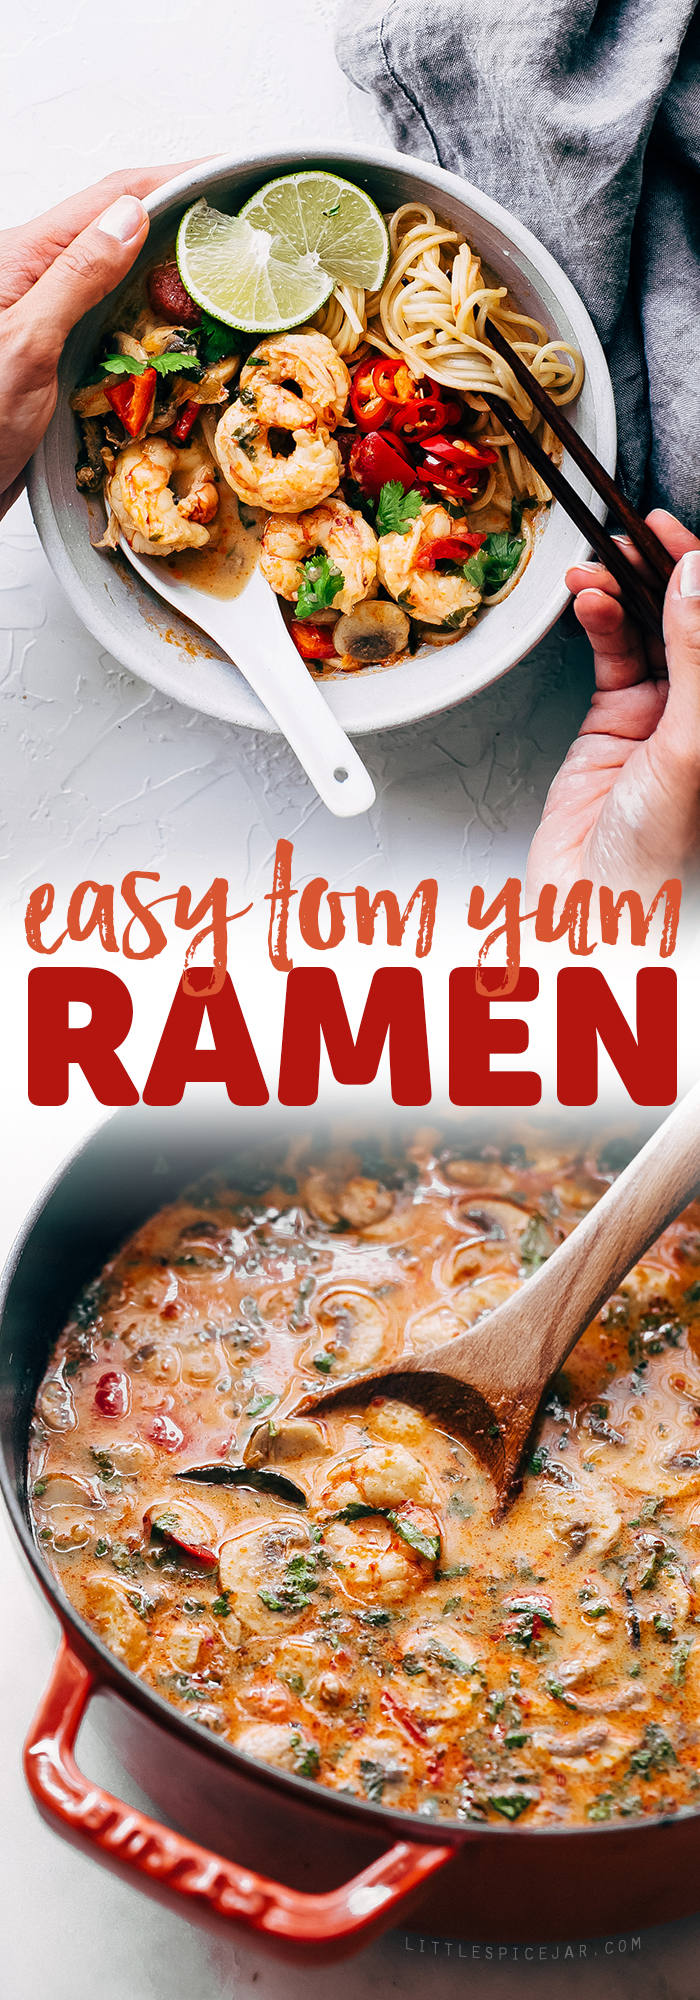 Creamy Tom Yum Ramen - an easy, weeknight friendly ramen recipe that tastes like your favorite tom yum soup! #ramen #weeknightrecipes #tomyumgoong #tomyumsoup #tomyum | Littlespicejar.com